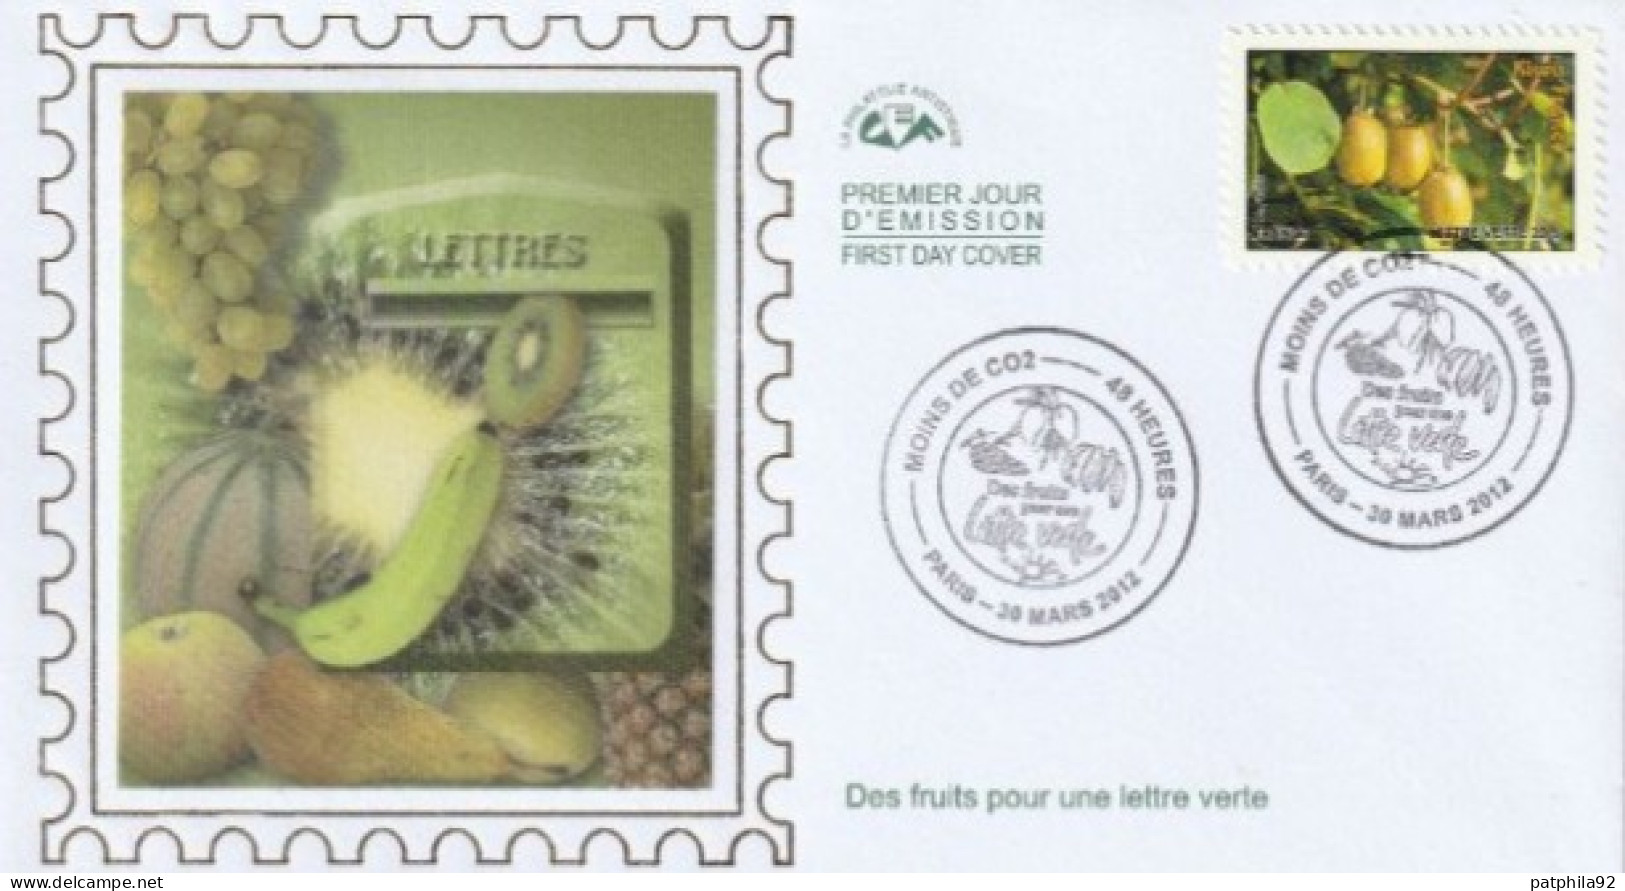 FDC 2012_Envel. 1er Jour_fdc_soie_Des Fruits Pour Une Lettre Verte, Kiwis France. (adh. 690). PJ Paris 30/03/12. - 2010-2019